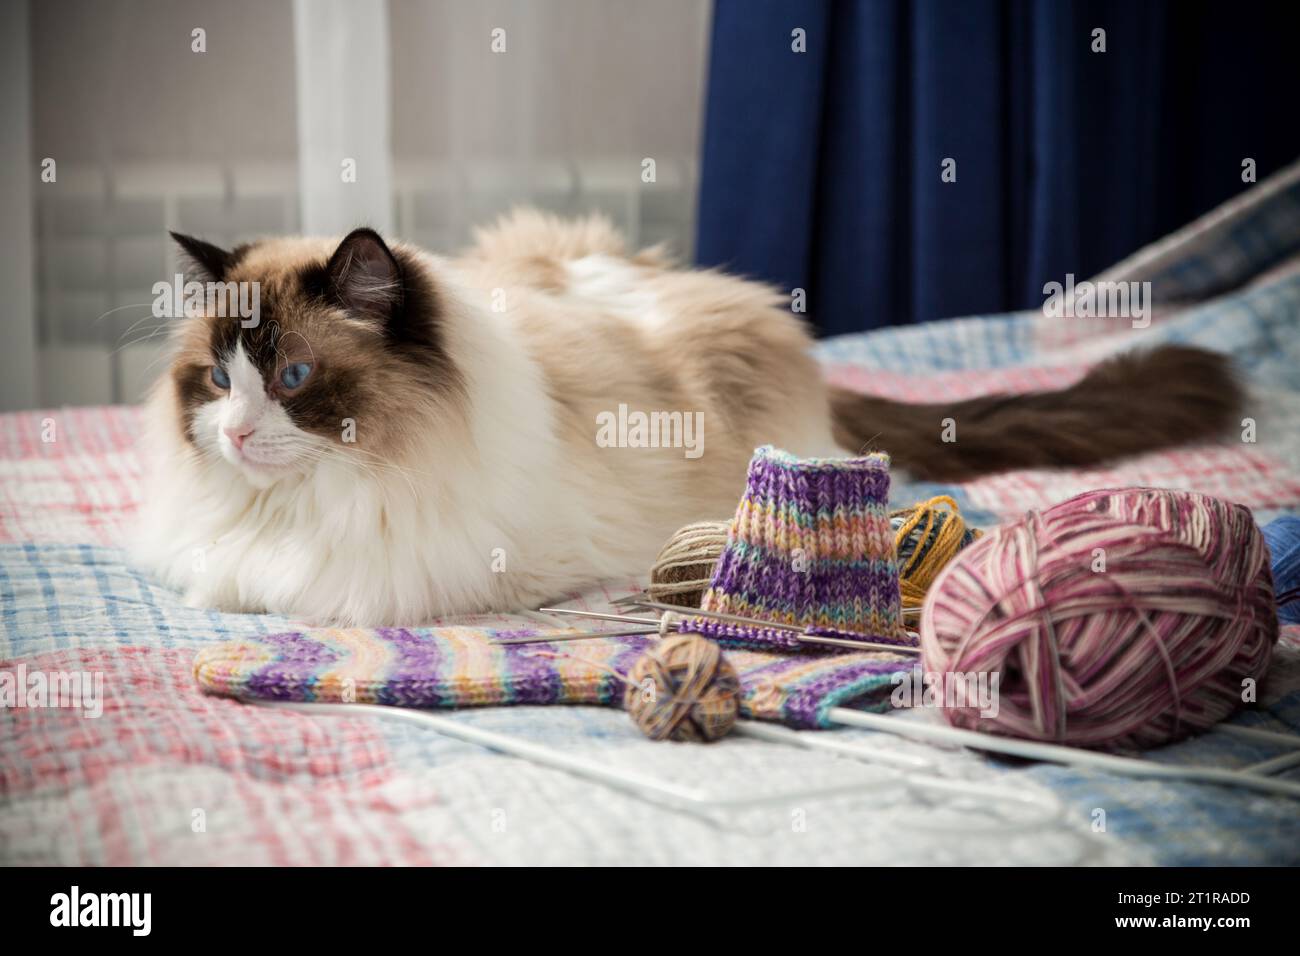 Farbige Fäden, Stricknadeln und andere Artikel zum Handstricken und eine süße Hauskatze Ragdoll auf dem Bett. Stockfoto